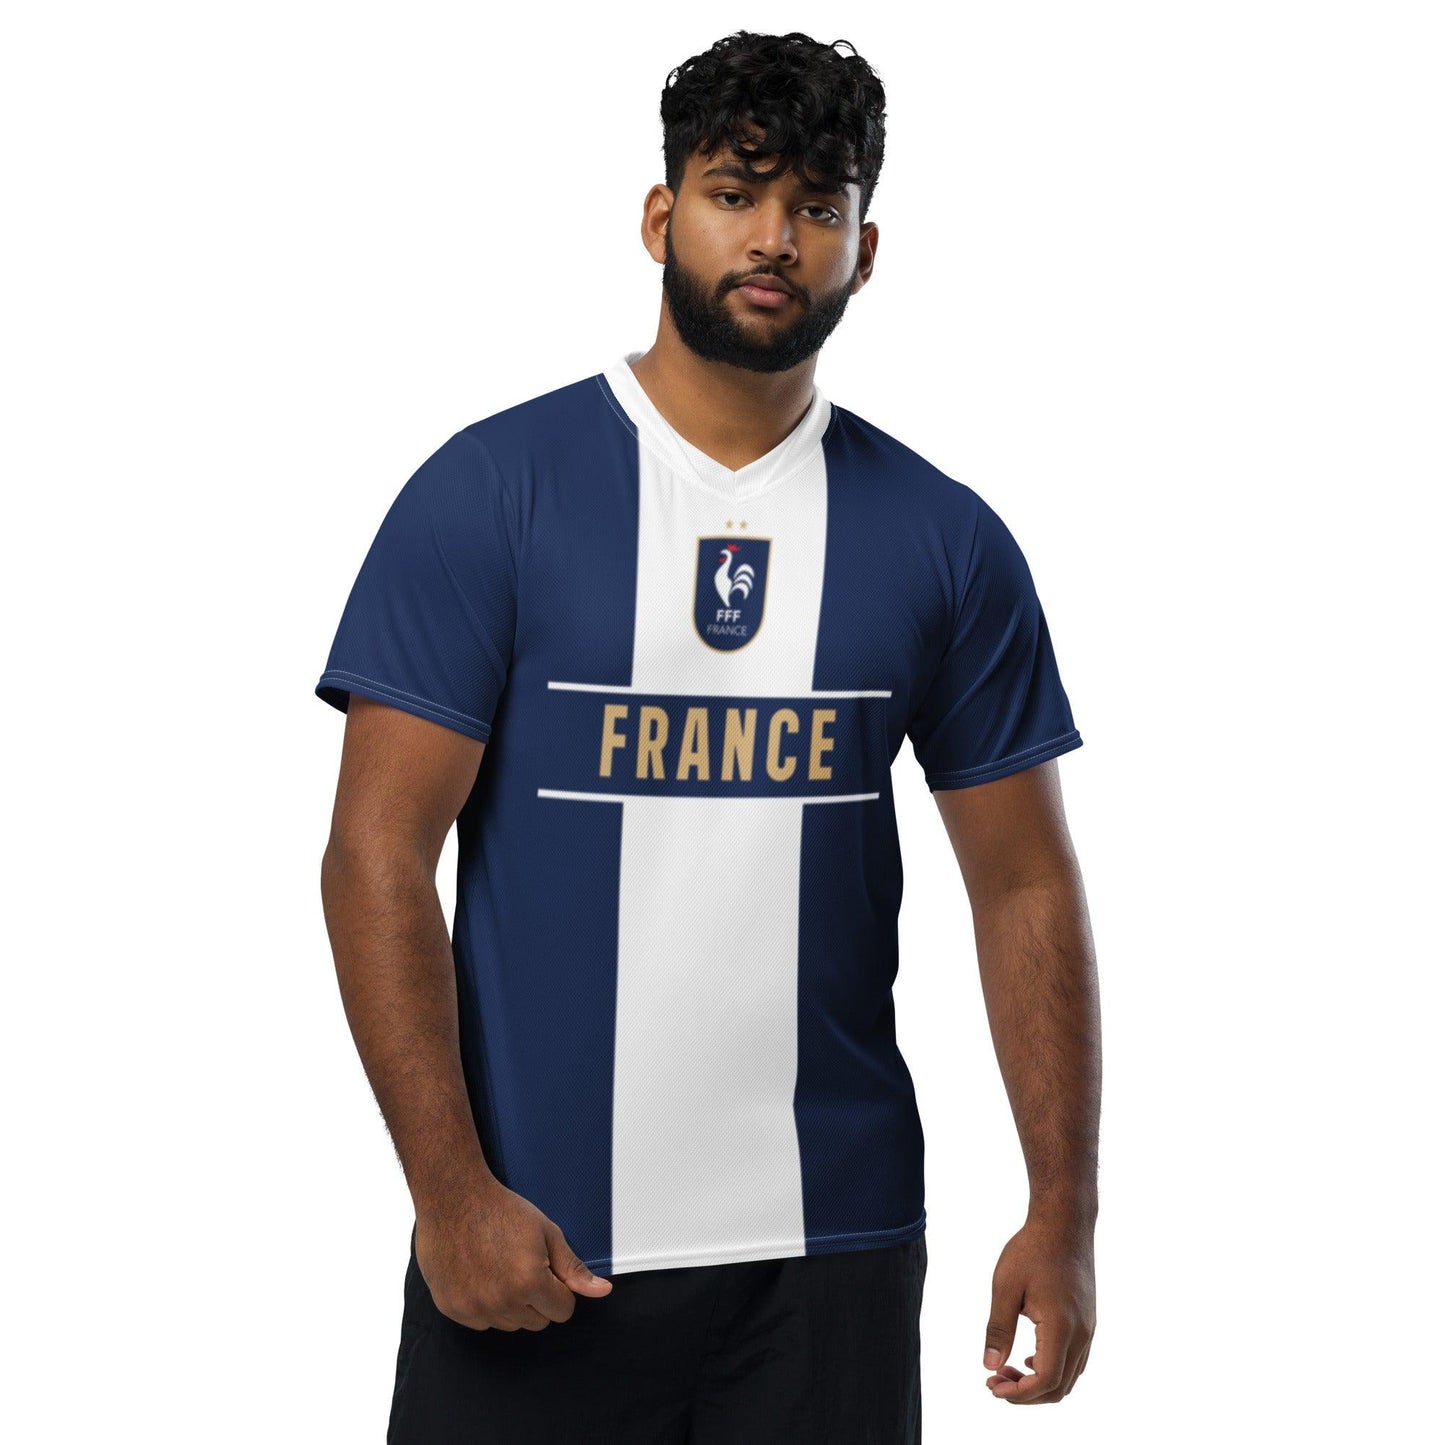 Volwassenen FFF Voetbalshirt Frankrijk - Blauwe glorie